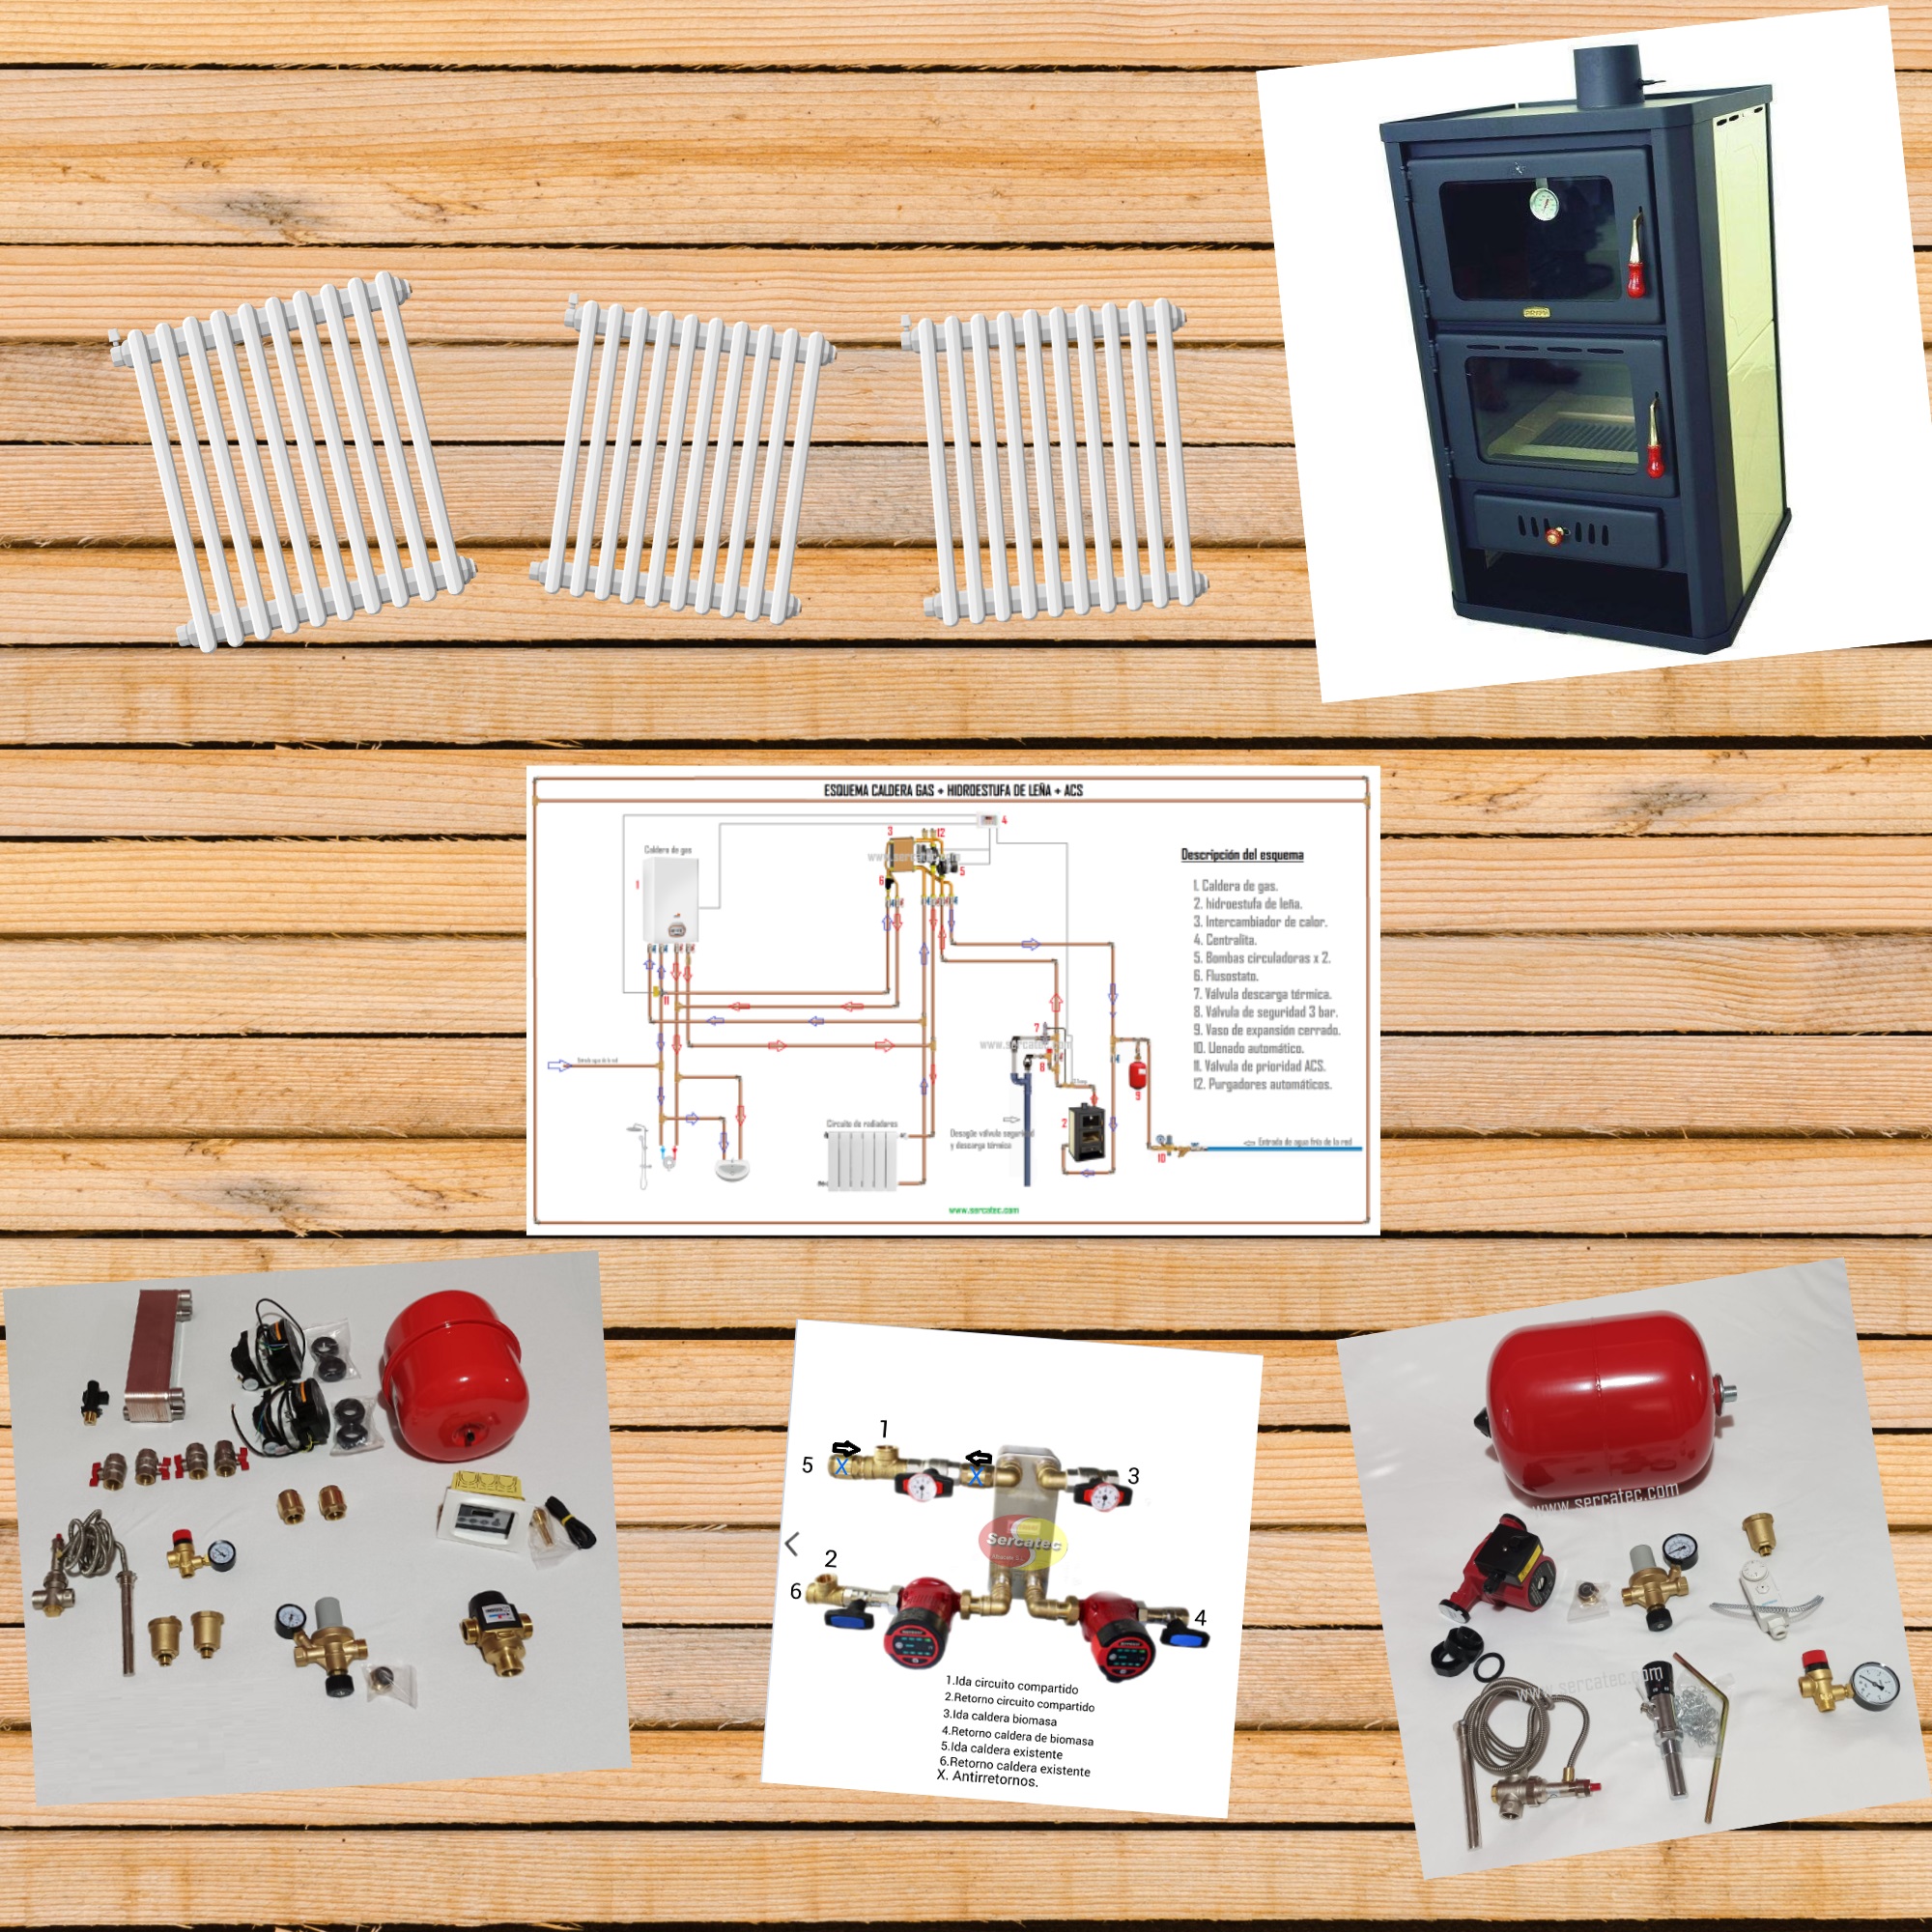 kits y piezas para instalar calefacciones de leña